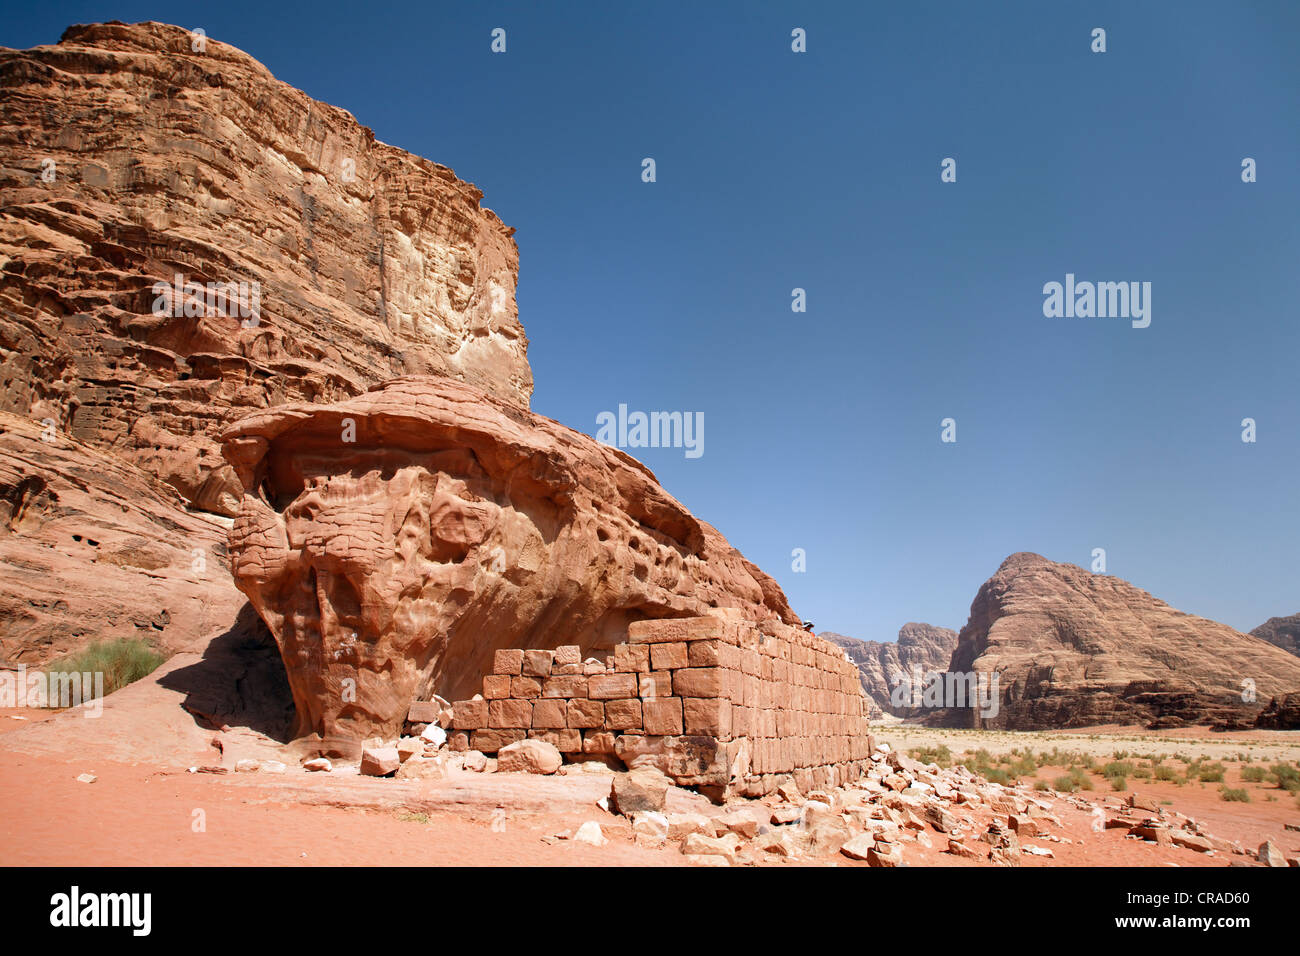 Chambre à partir de Lawrence d'Arabie, ruine, mur, désert, Wadi Rum, Royaume hachémite de Jordanie, Moyen-Orient, Asie Banque D'Images